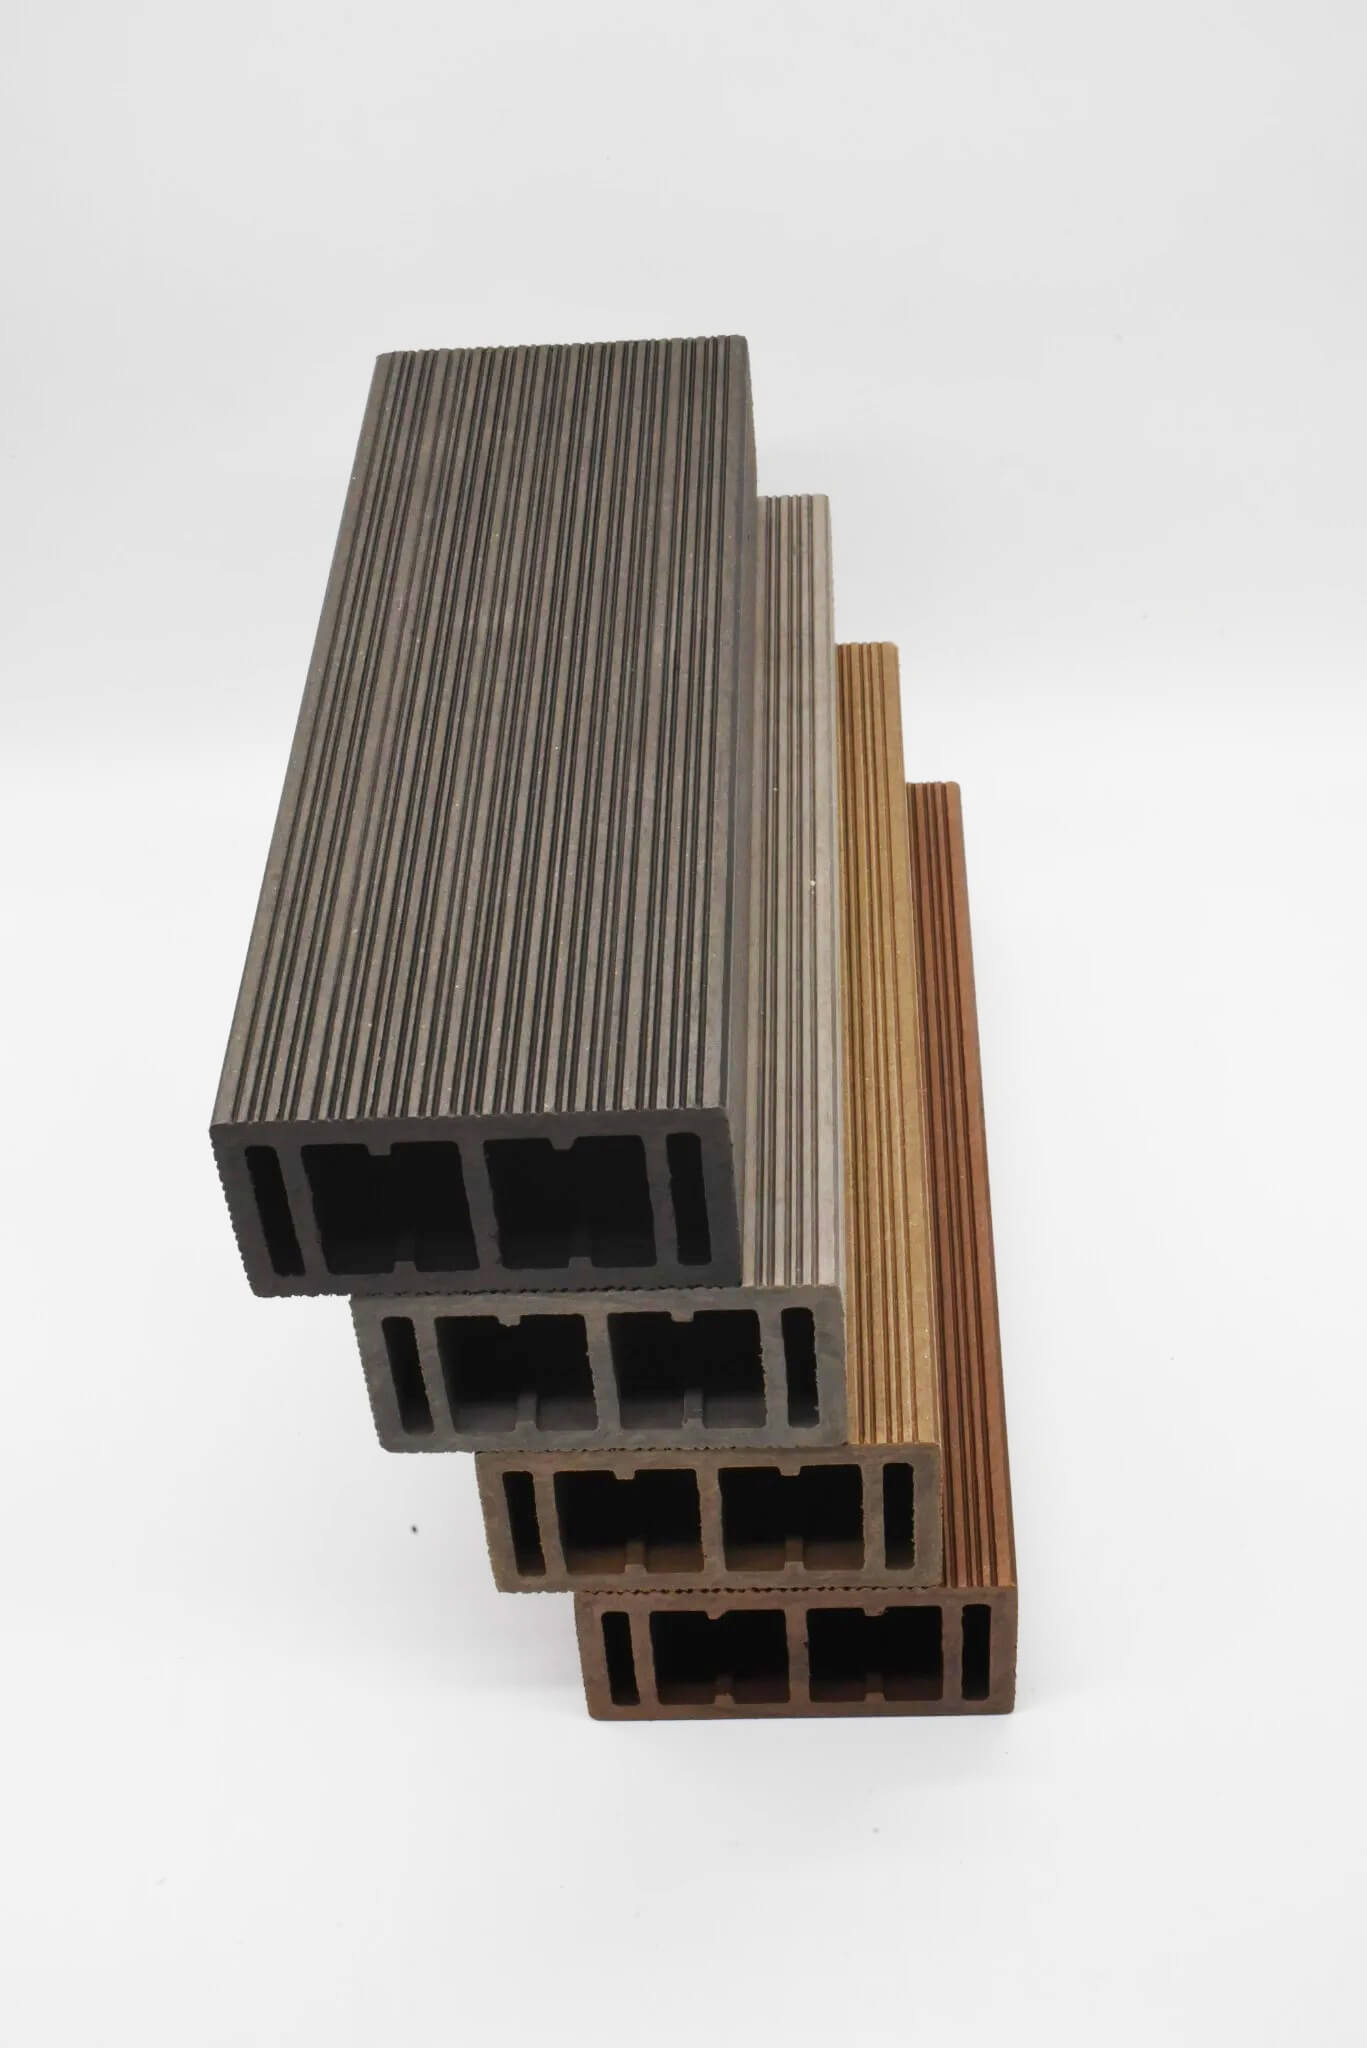 Thanh lam gỗ nhựa Hoàng Phát 50 x 100mm có 4 màu